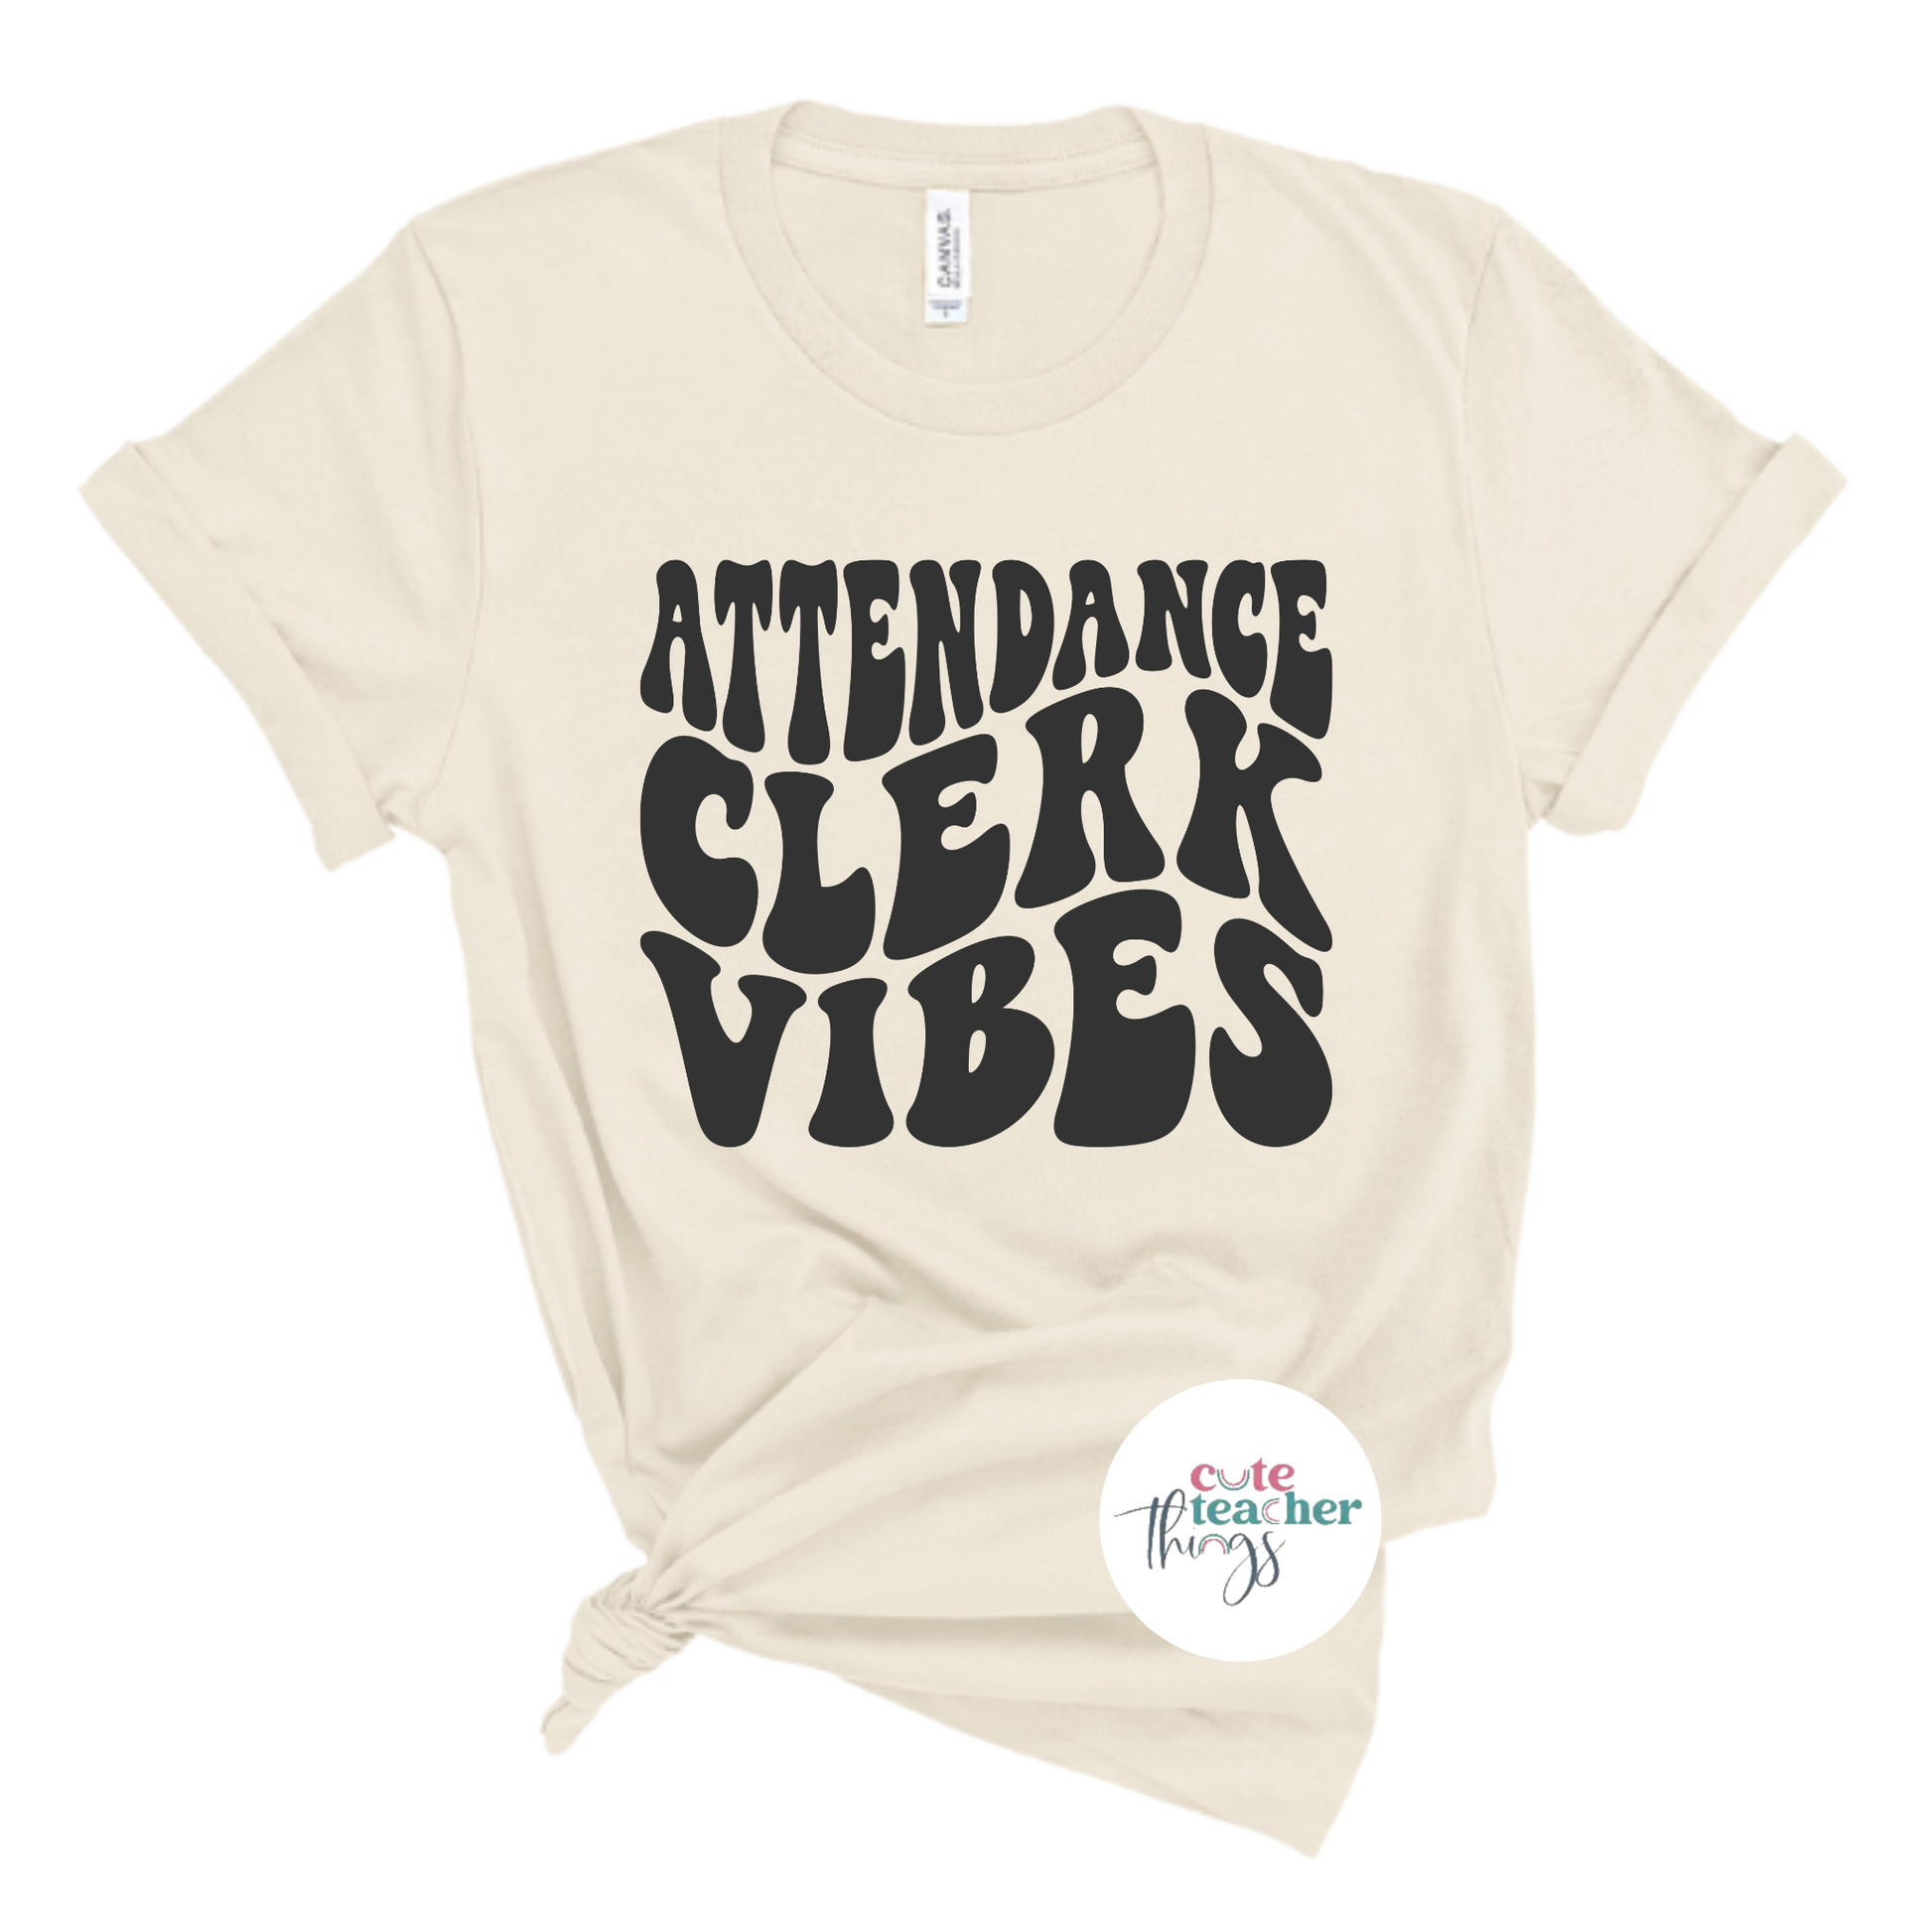 for attendance clerk, attendance clerk ootd, attendance clerk team 